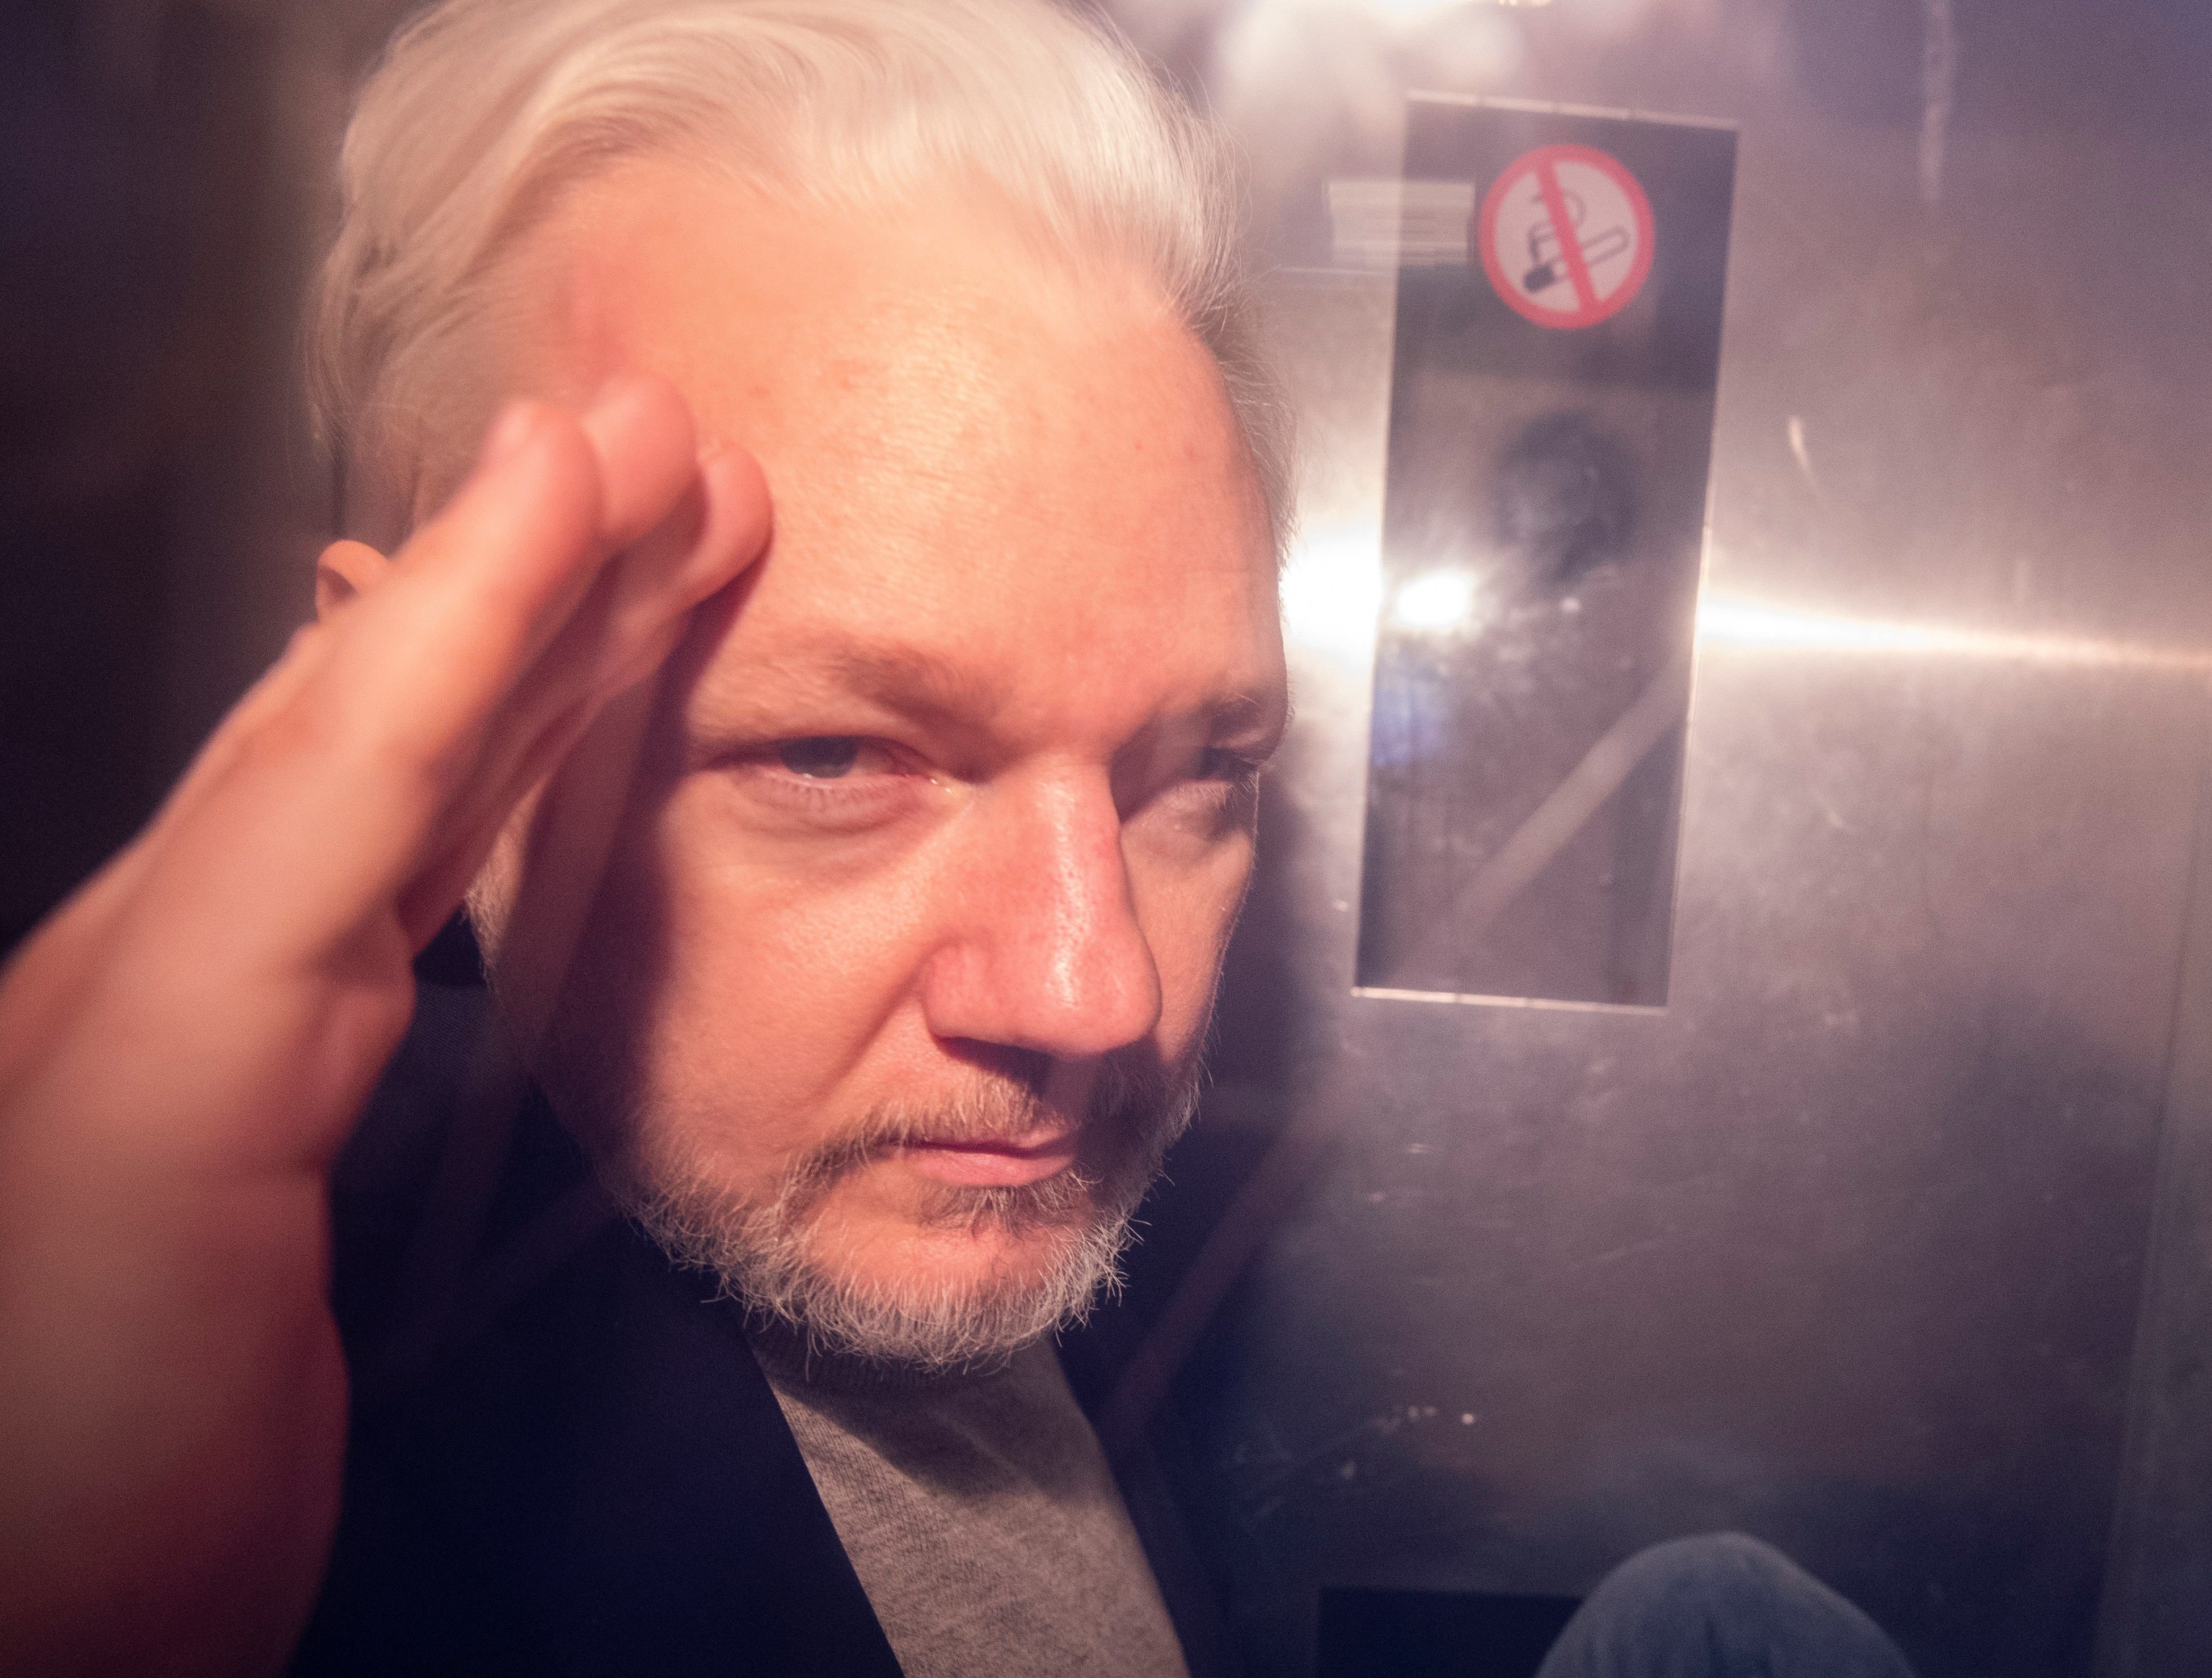 La possible extradició d'Assange i la llibertat d'expressió